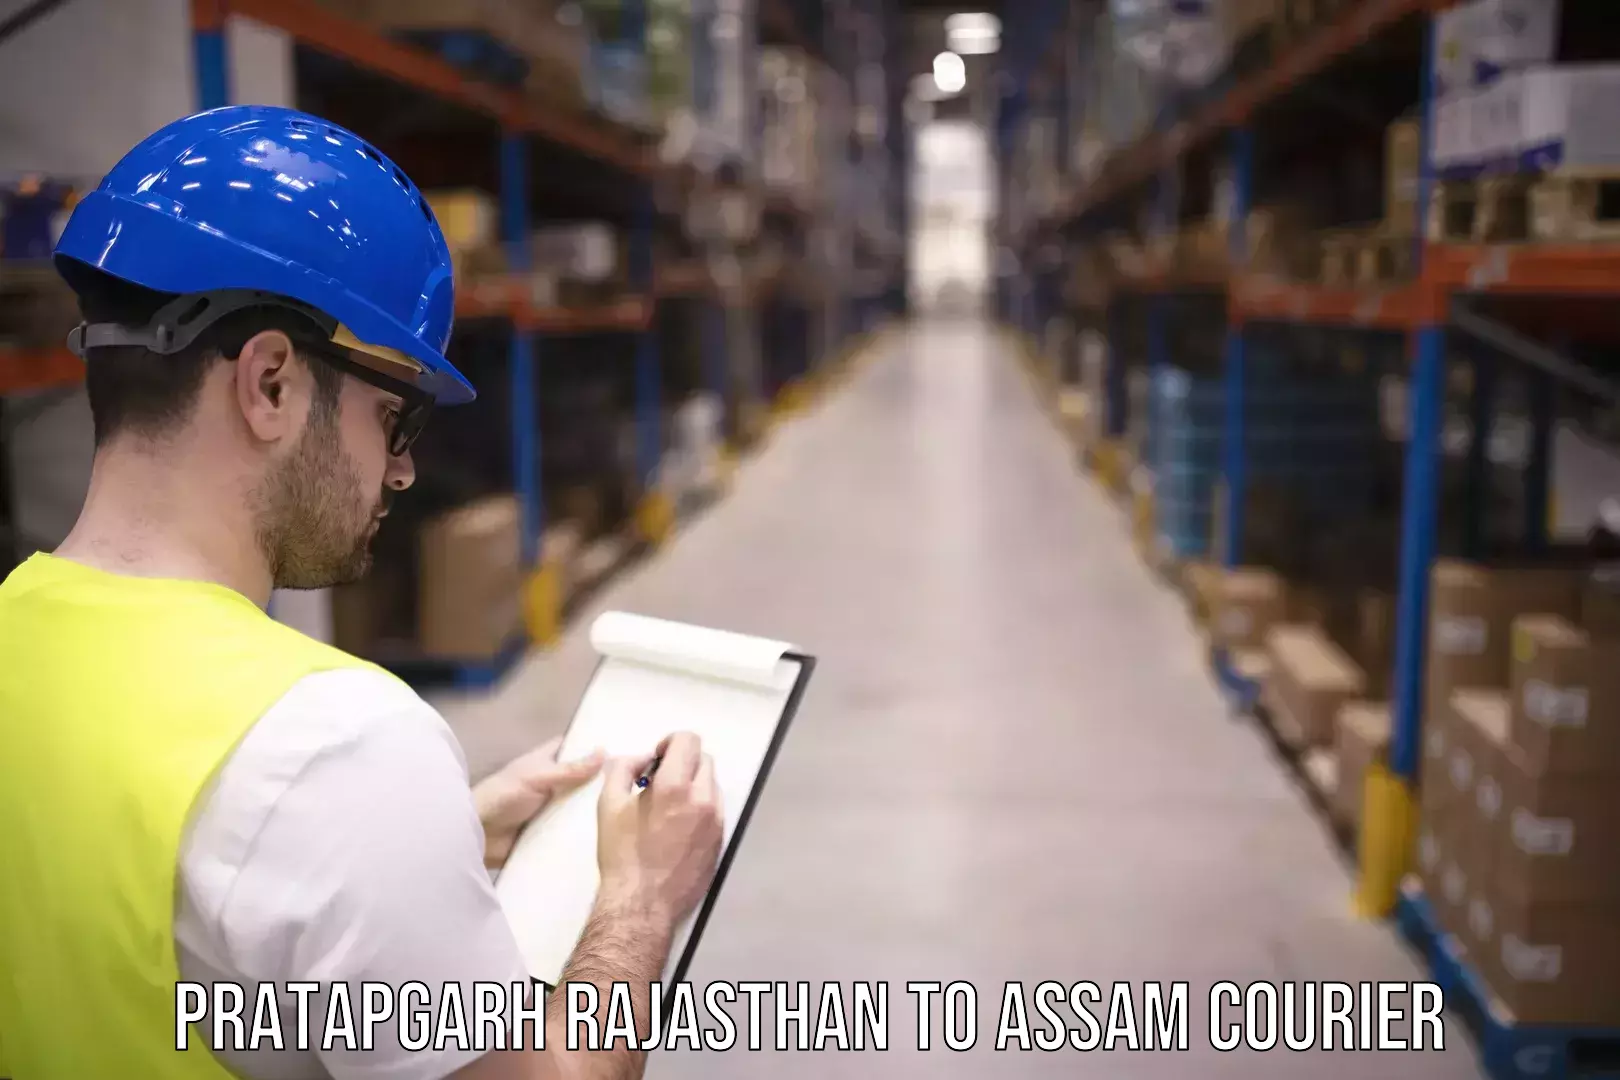 Courier app Pratapgarh Rajasthan to Assam